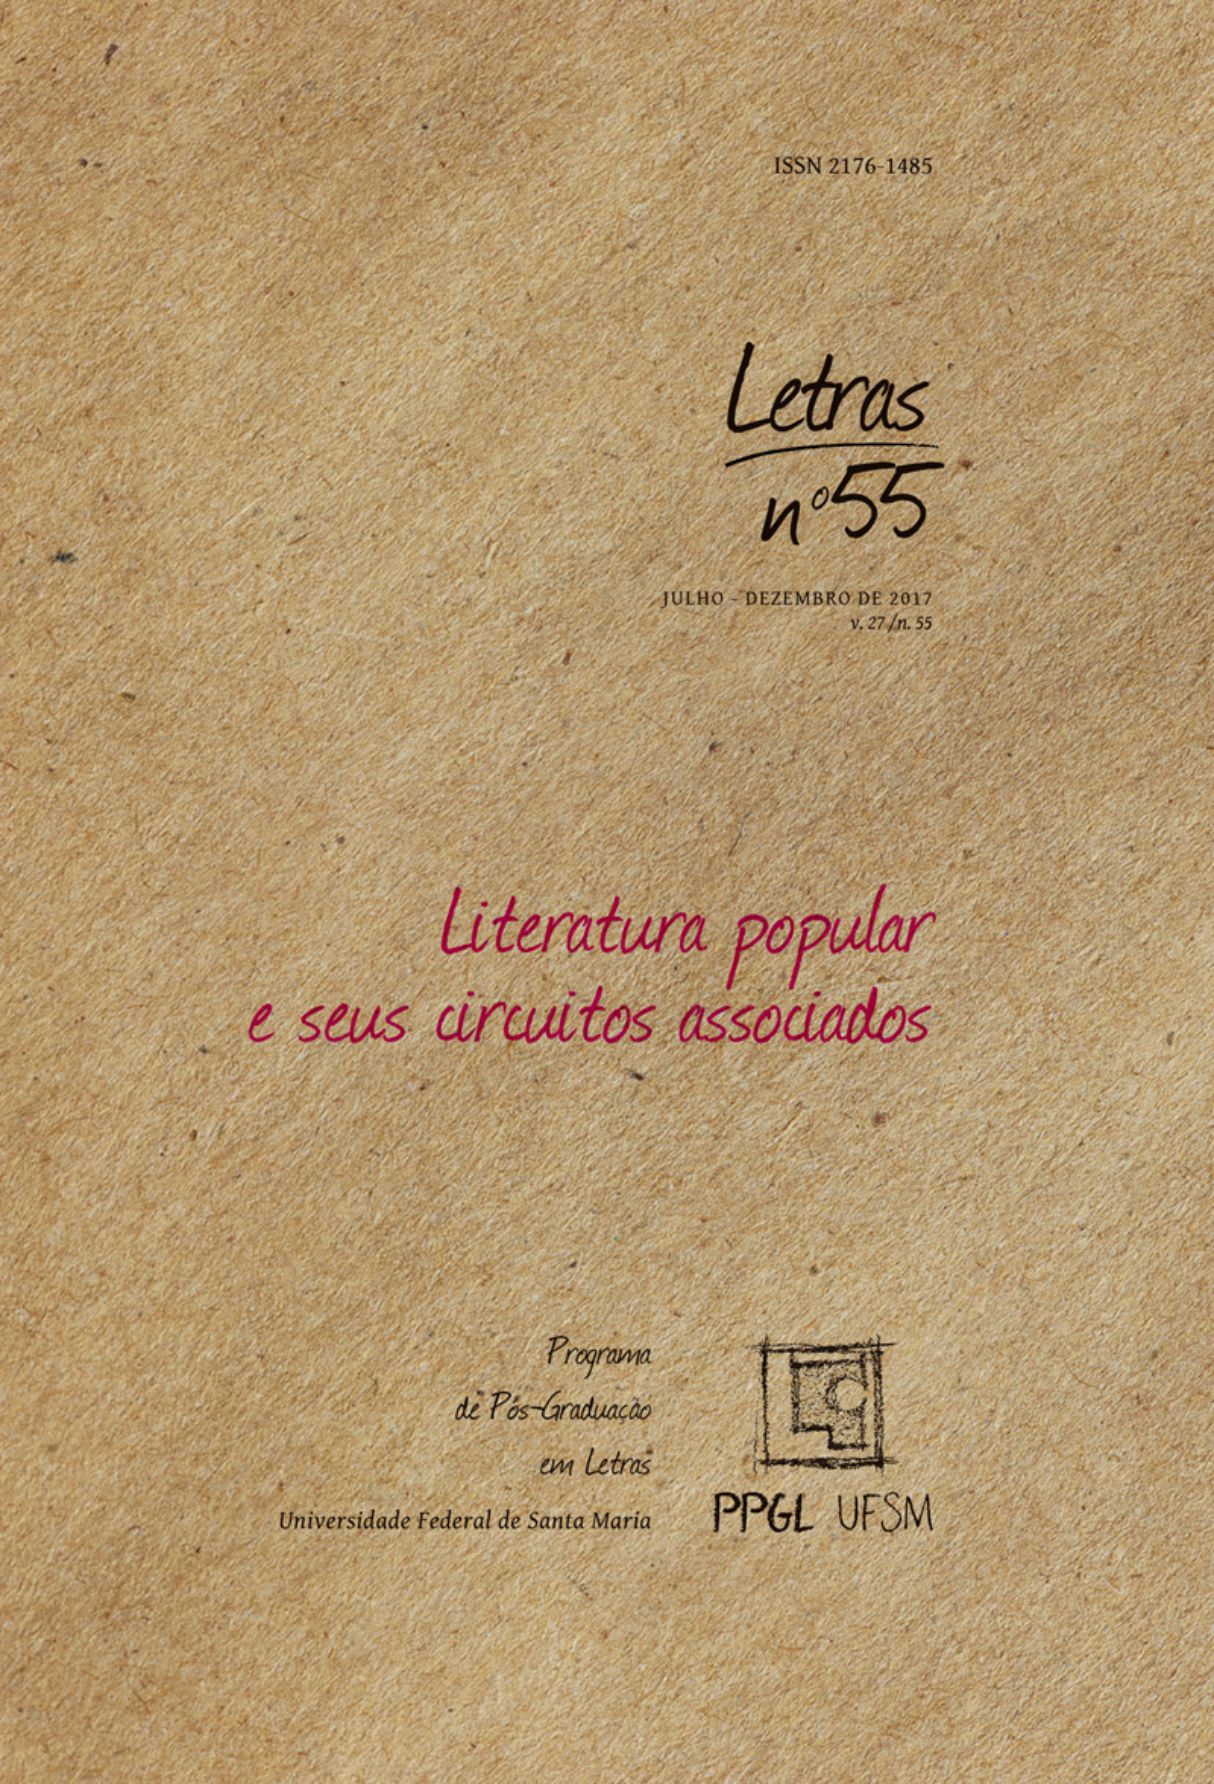 Capa: Revista Letras – UFSM